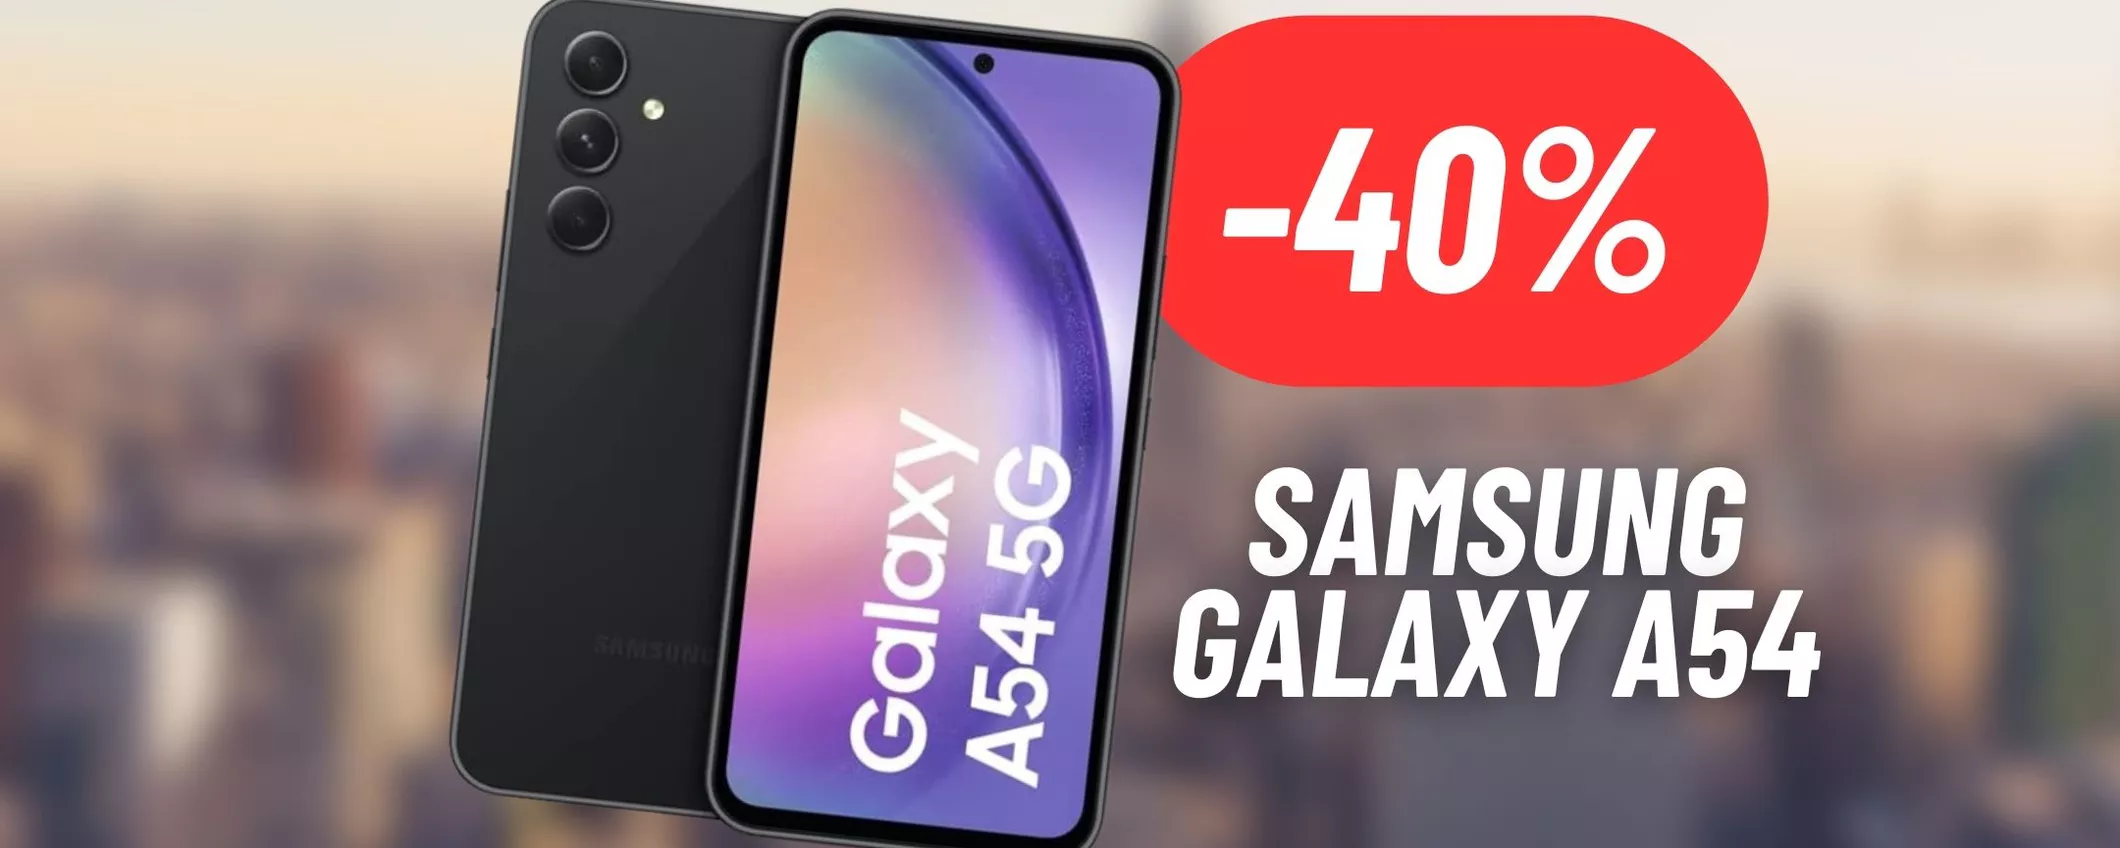 Disintegrato il prezzo del Samsung Galaxy A54: MAXI SCONTO Amazon (-40%)